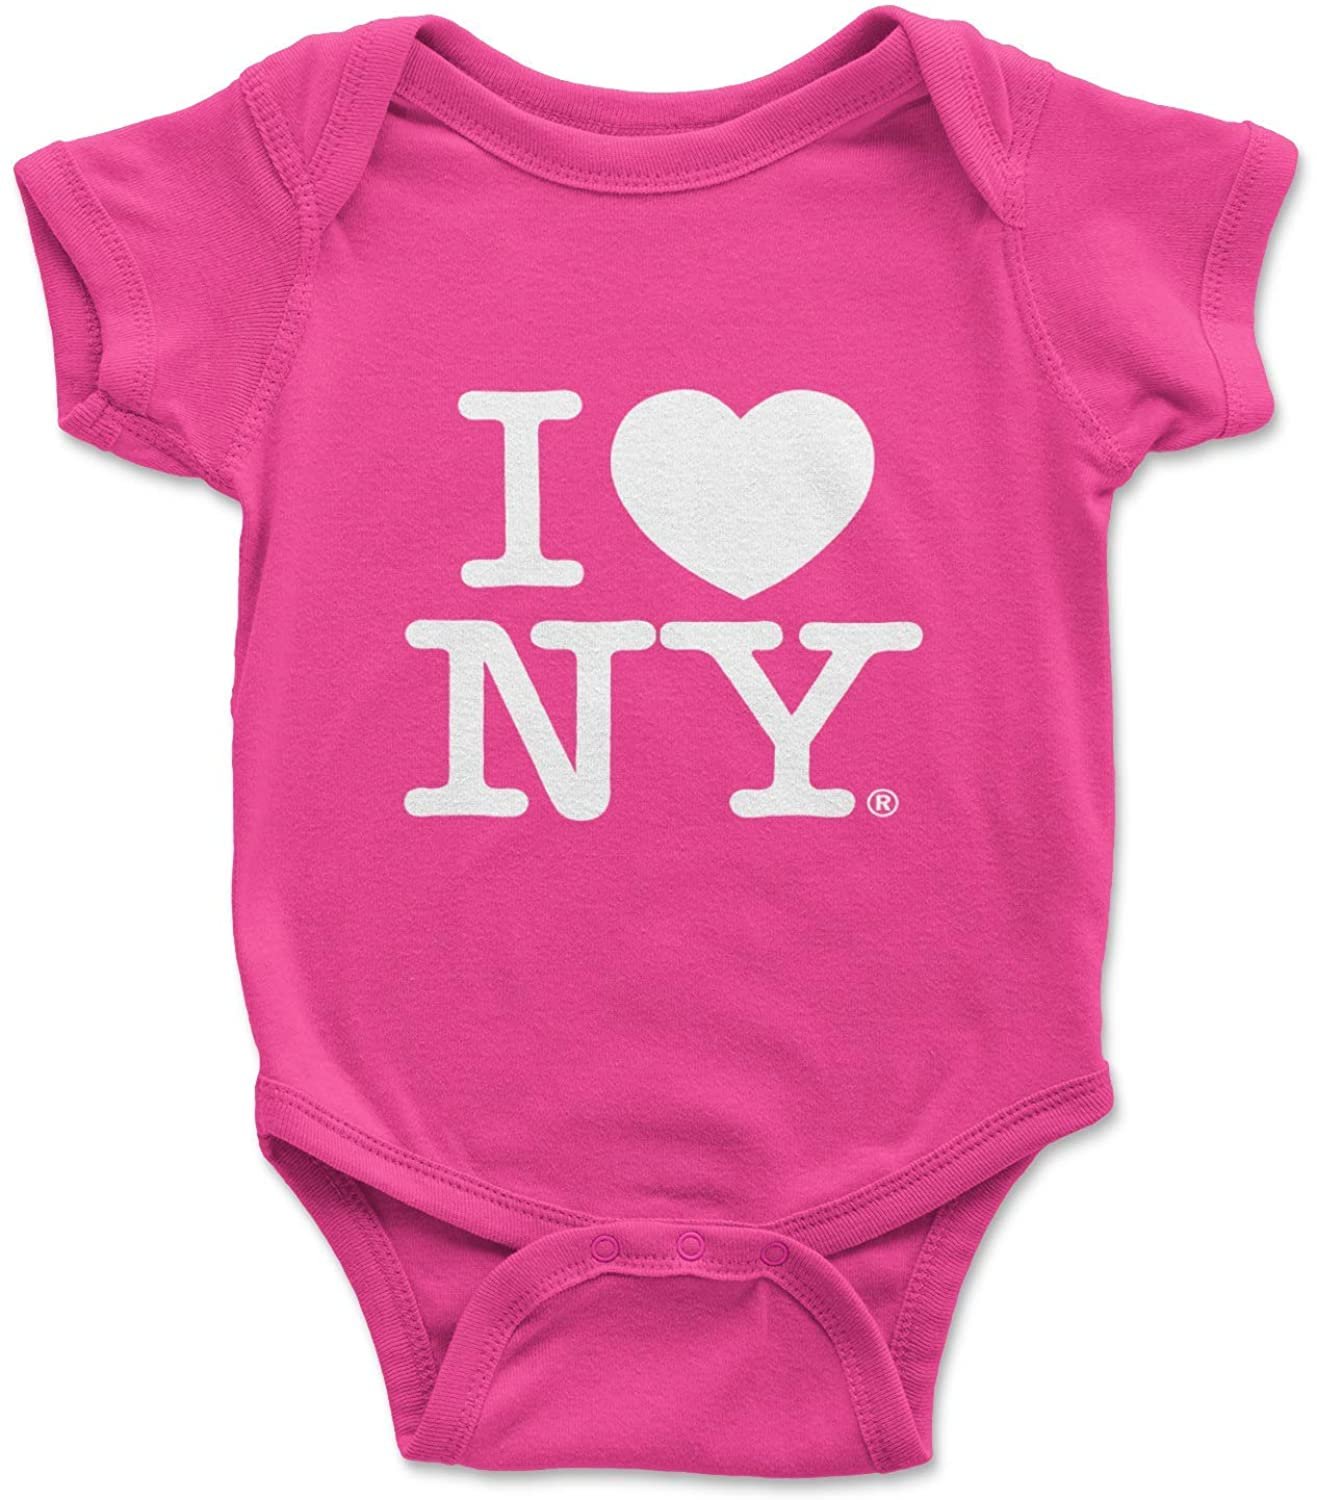 I Love NY Baby Bodysuit Hot Pink